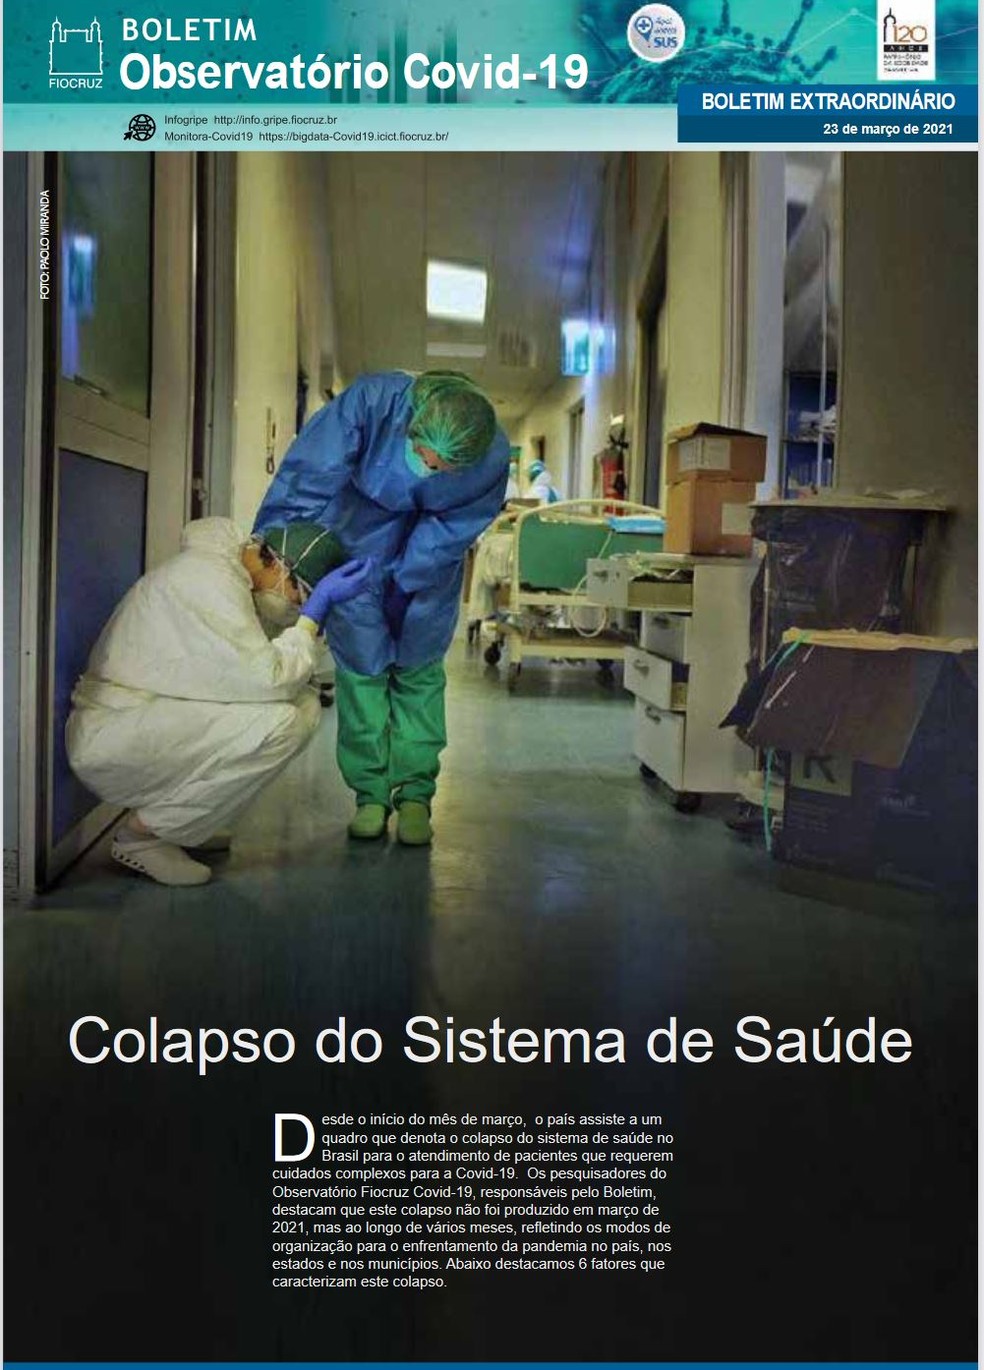 Boletim da Fiocruz que pede restrição de atividades por 14 dias tem como destaque o "colapso do sistema de saúde" — Foto: Reprodução